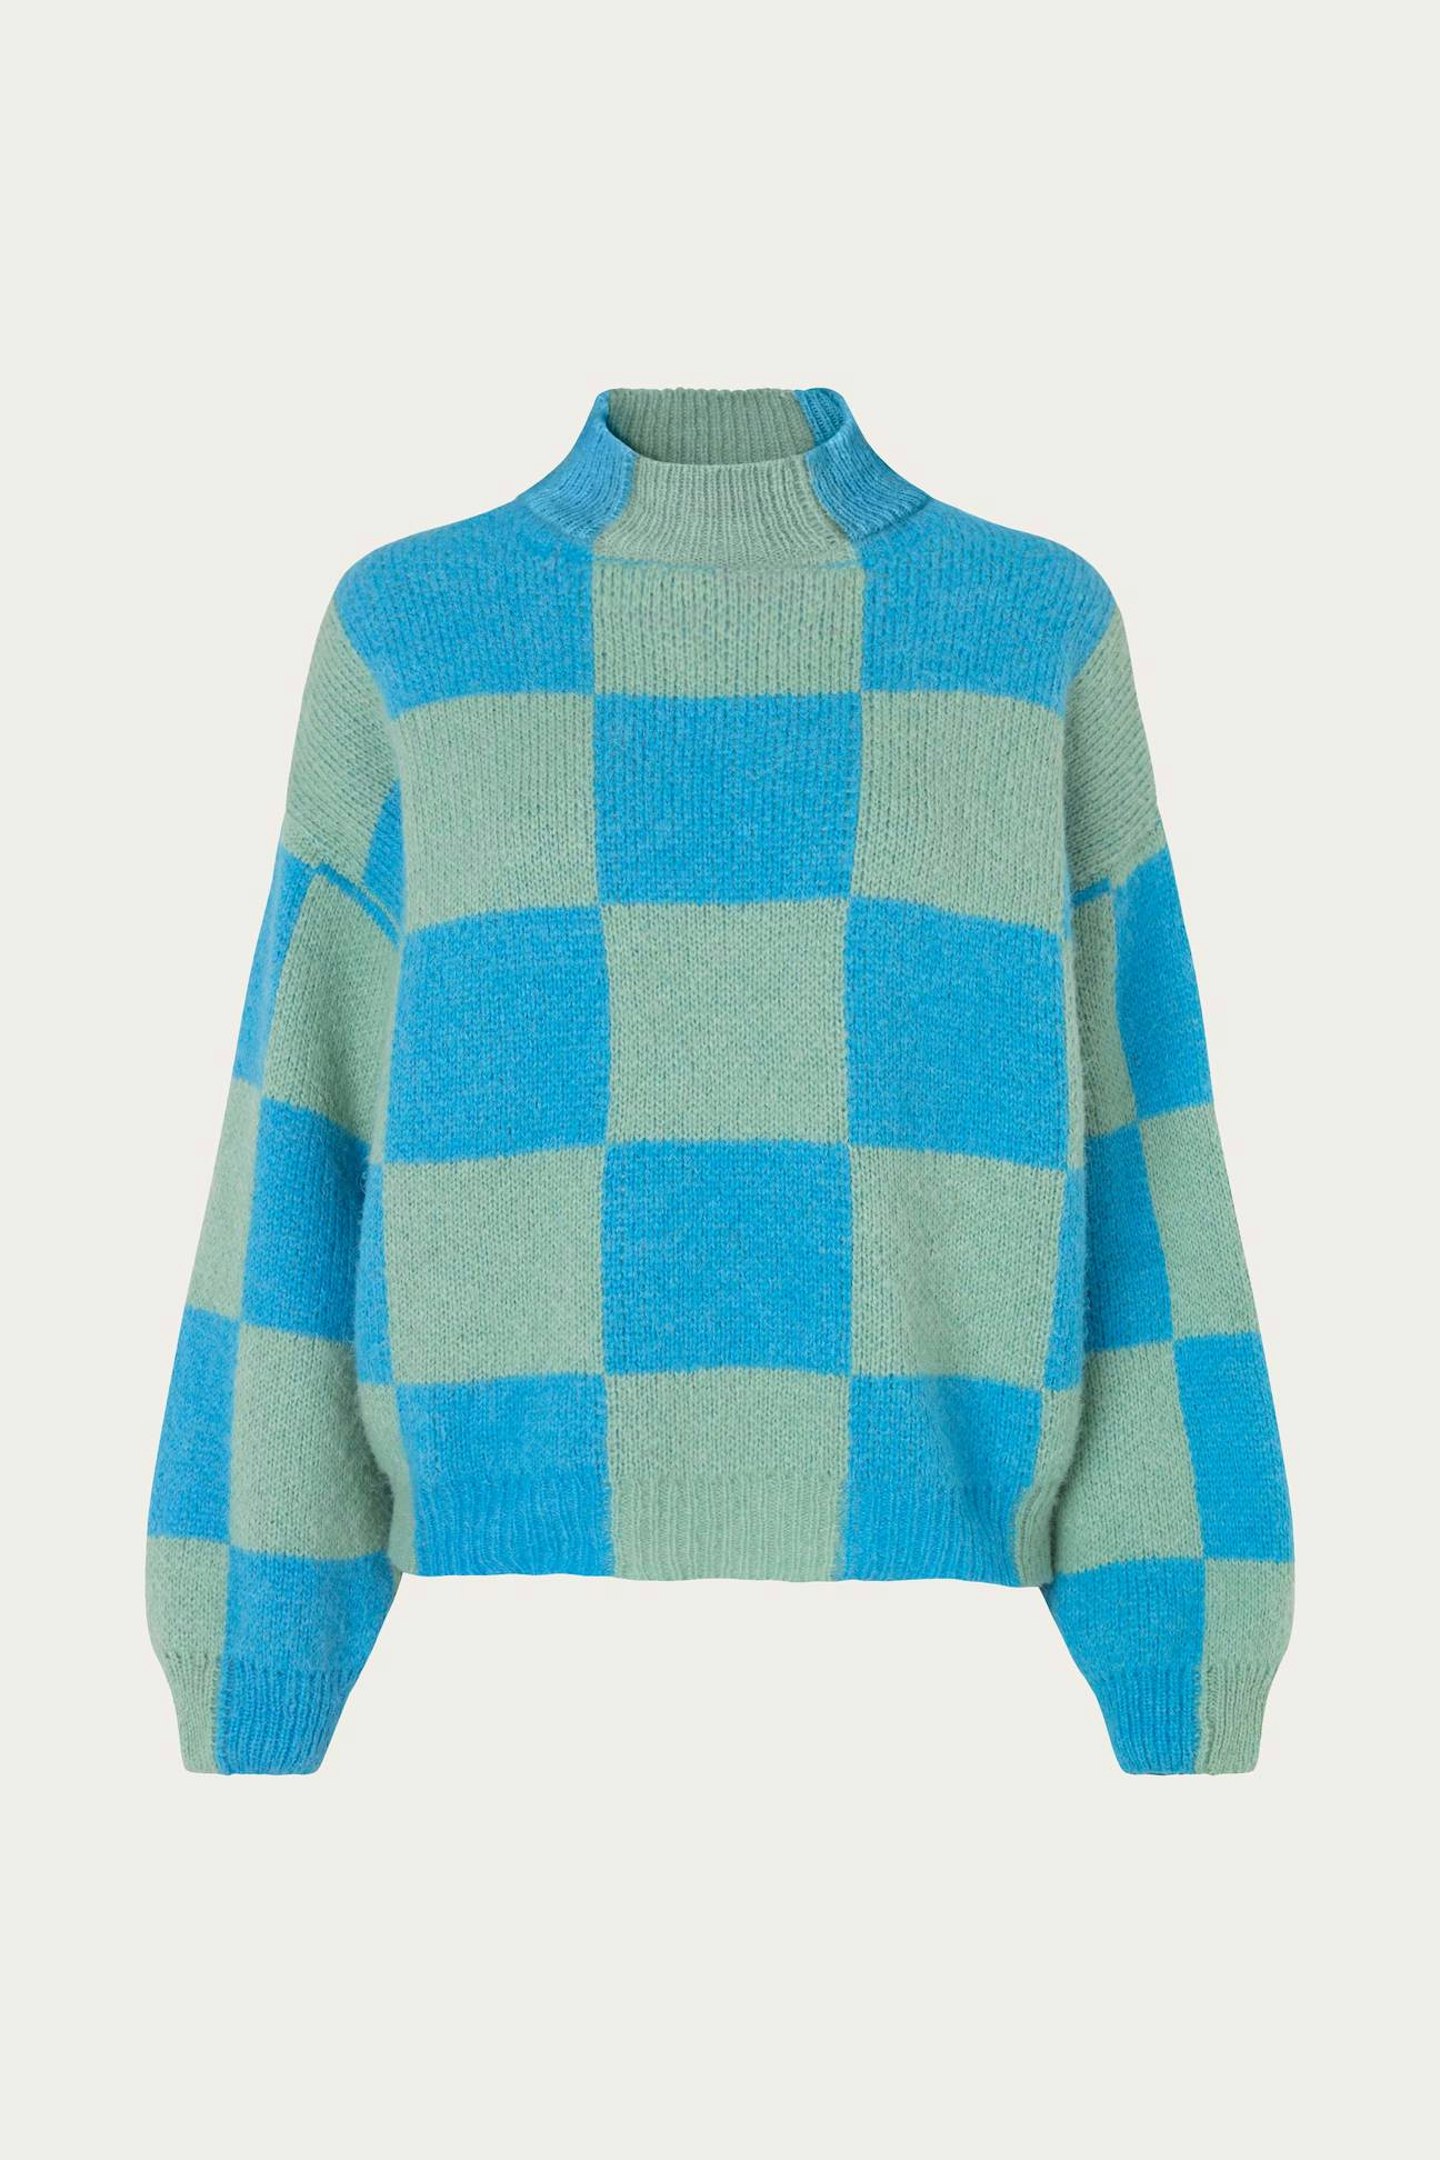 Adonis Sweater Aqua, £210